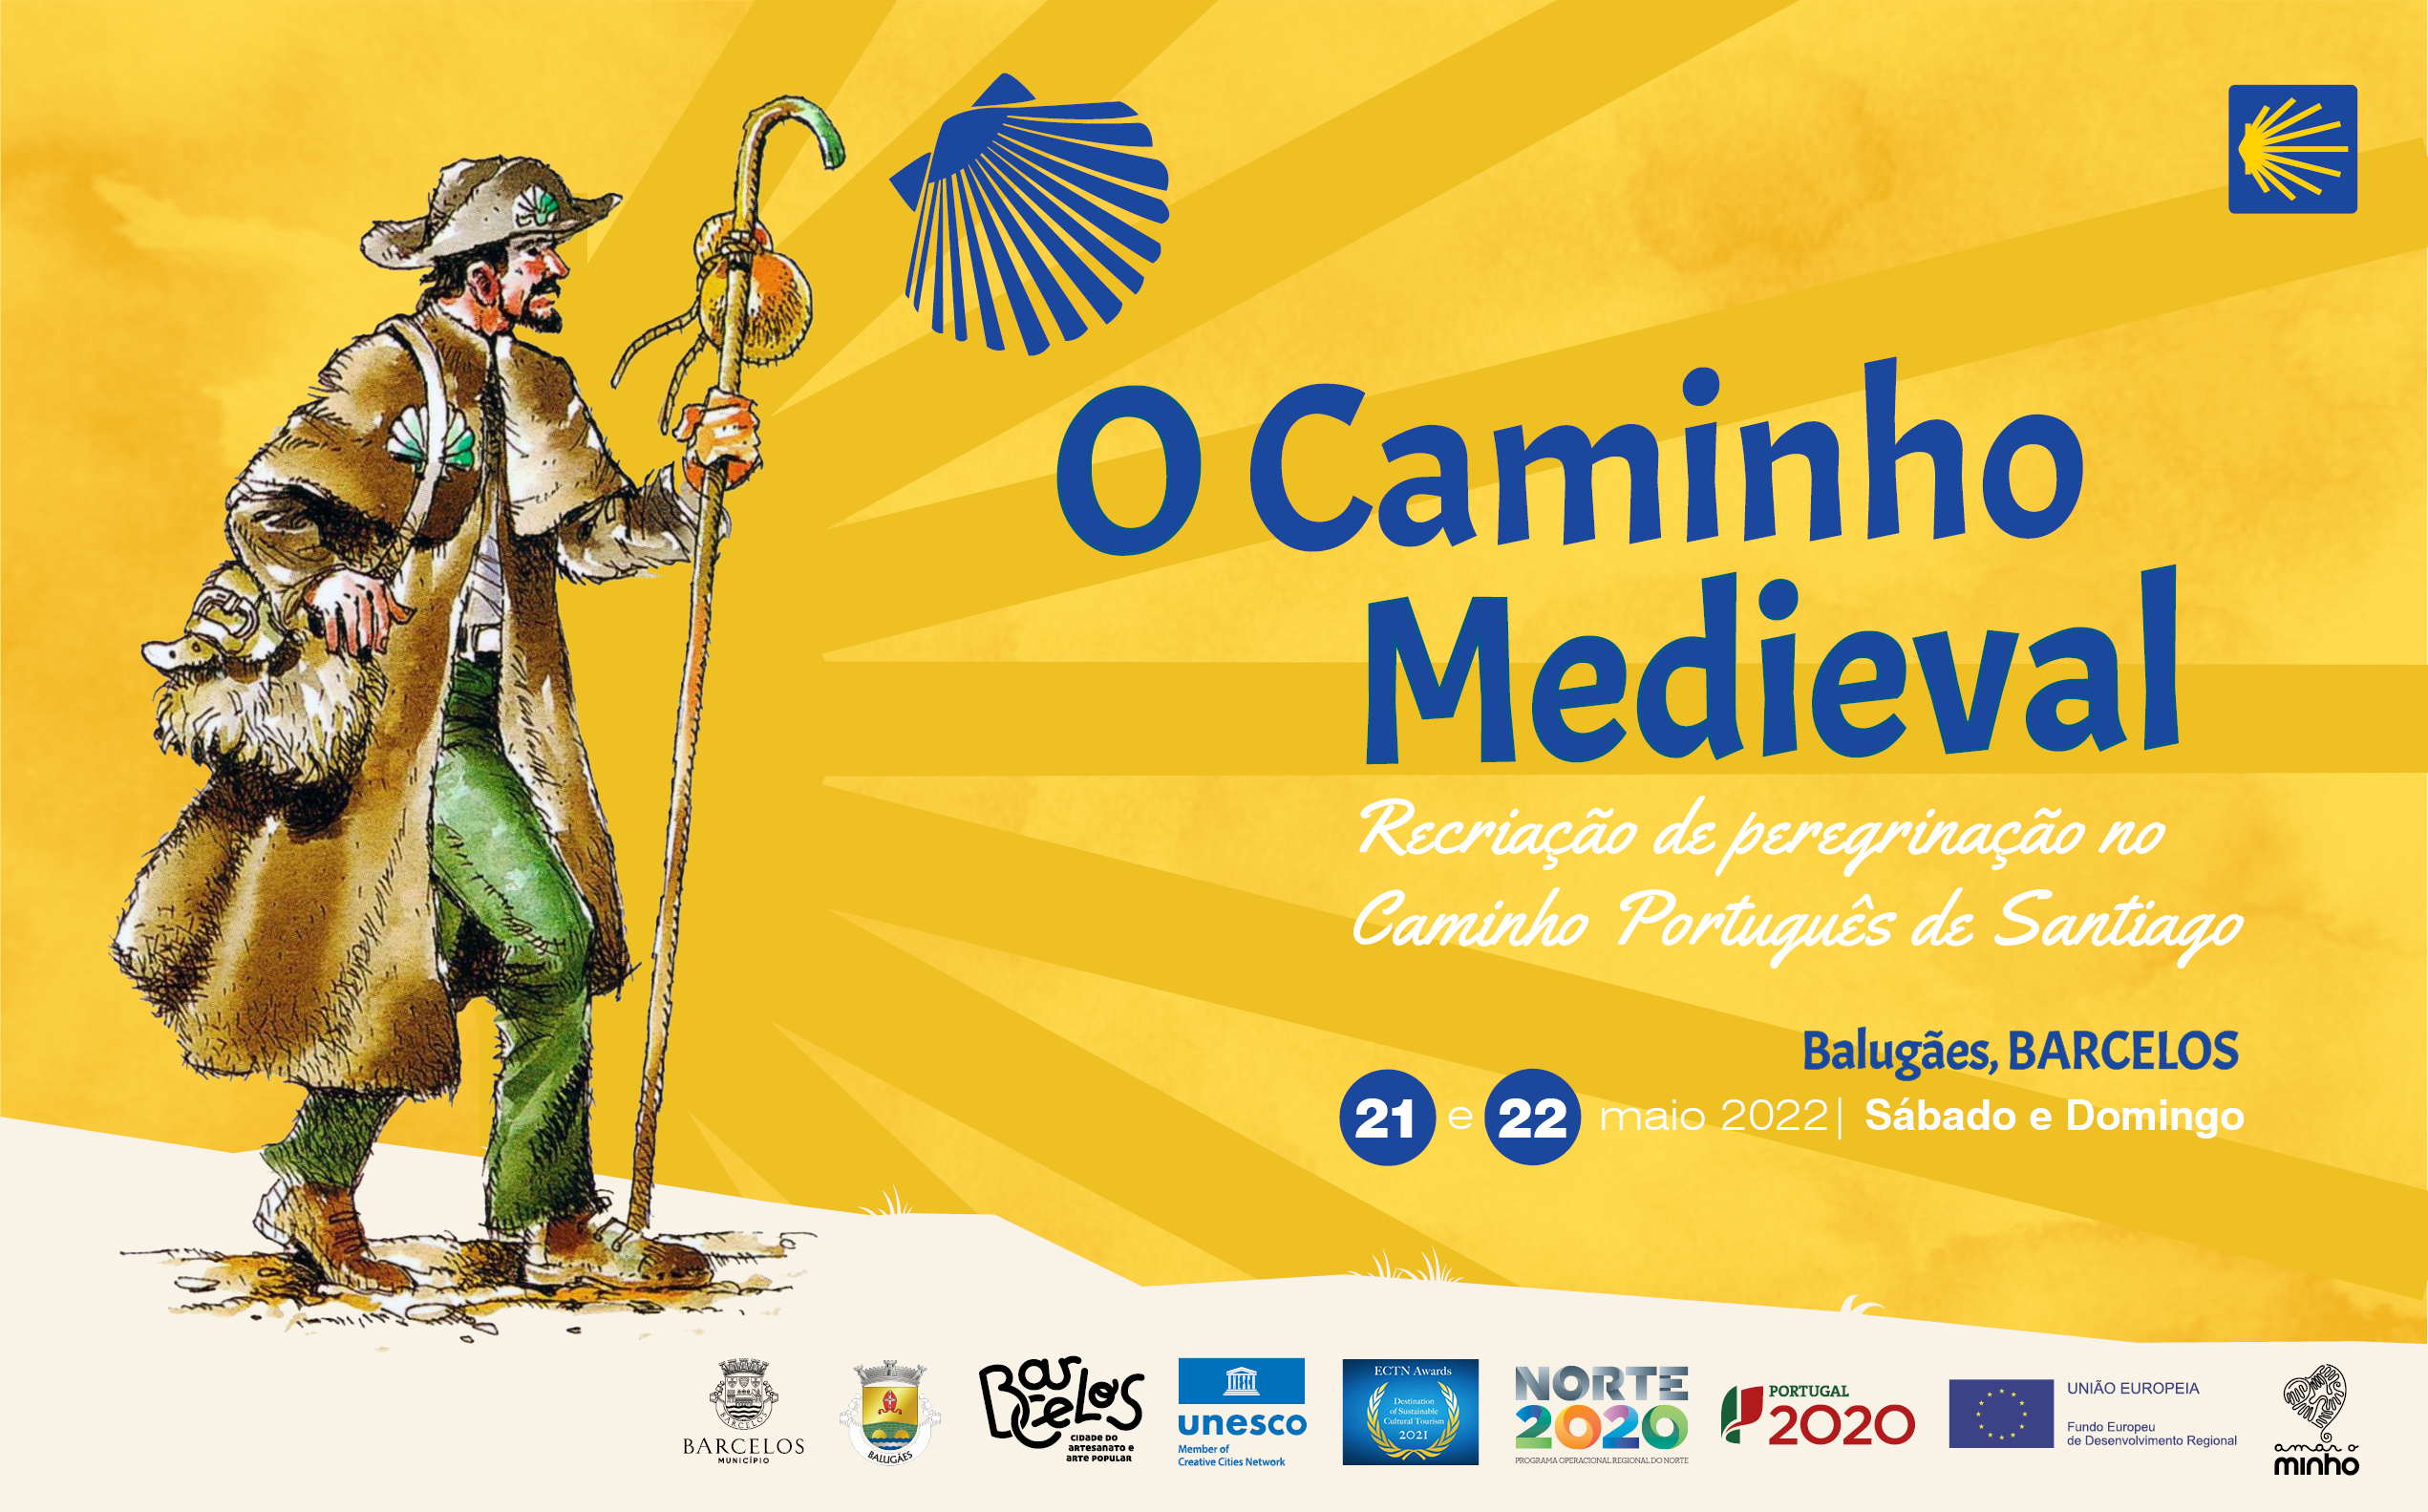 Caminho Medieval: “Recriação de peregrinação no Caminho Português de Santiago”